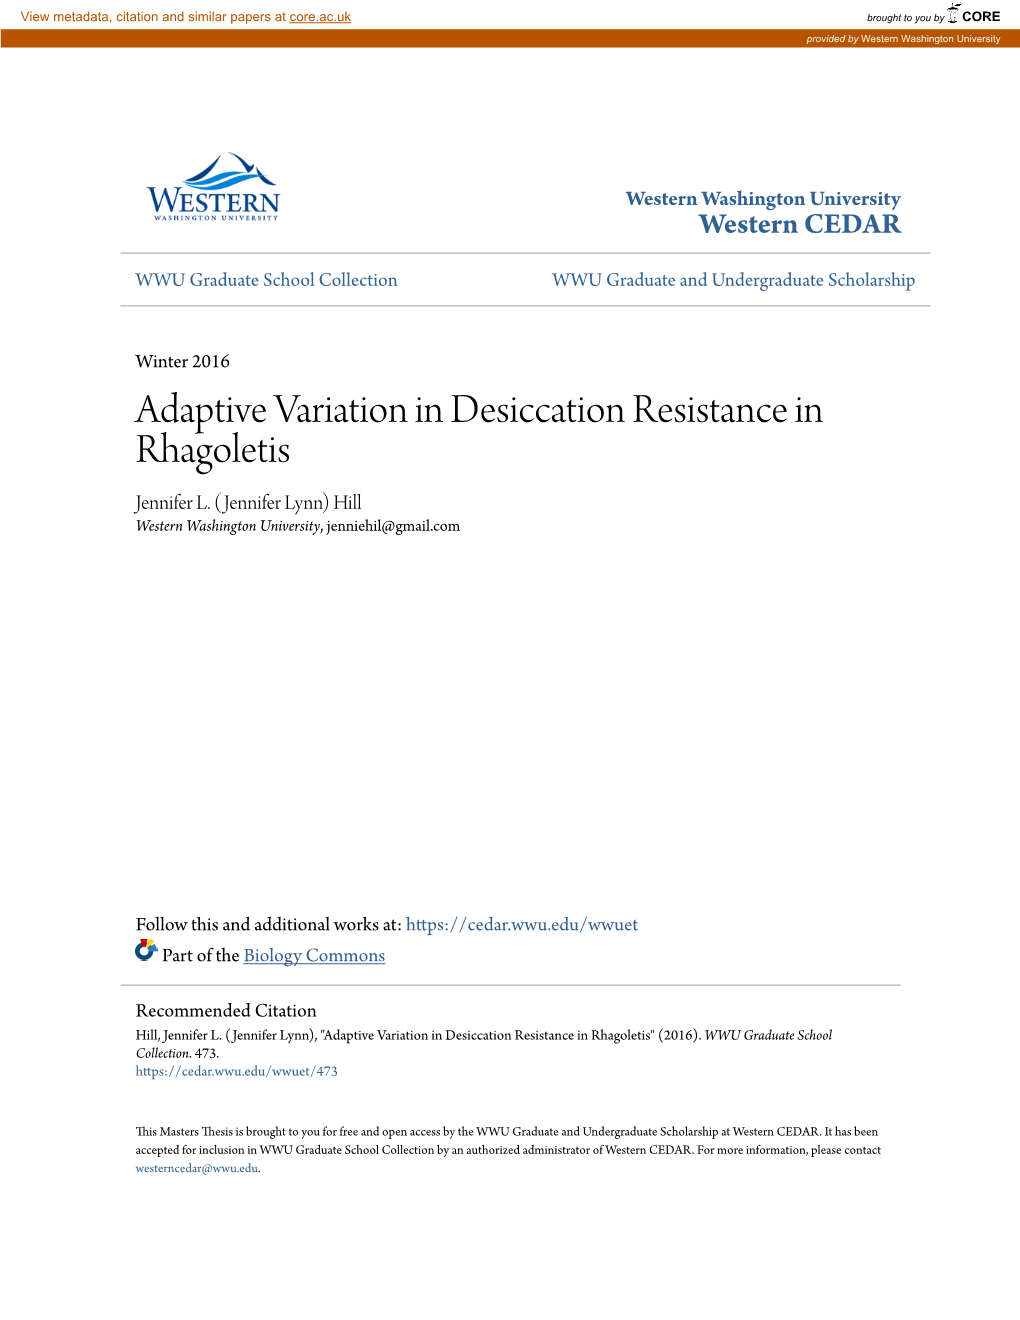 Adaptive Variation in Desiccation Resistance in Rhagoletis Jennifer L